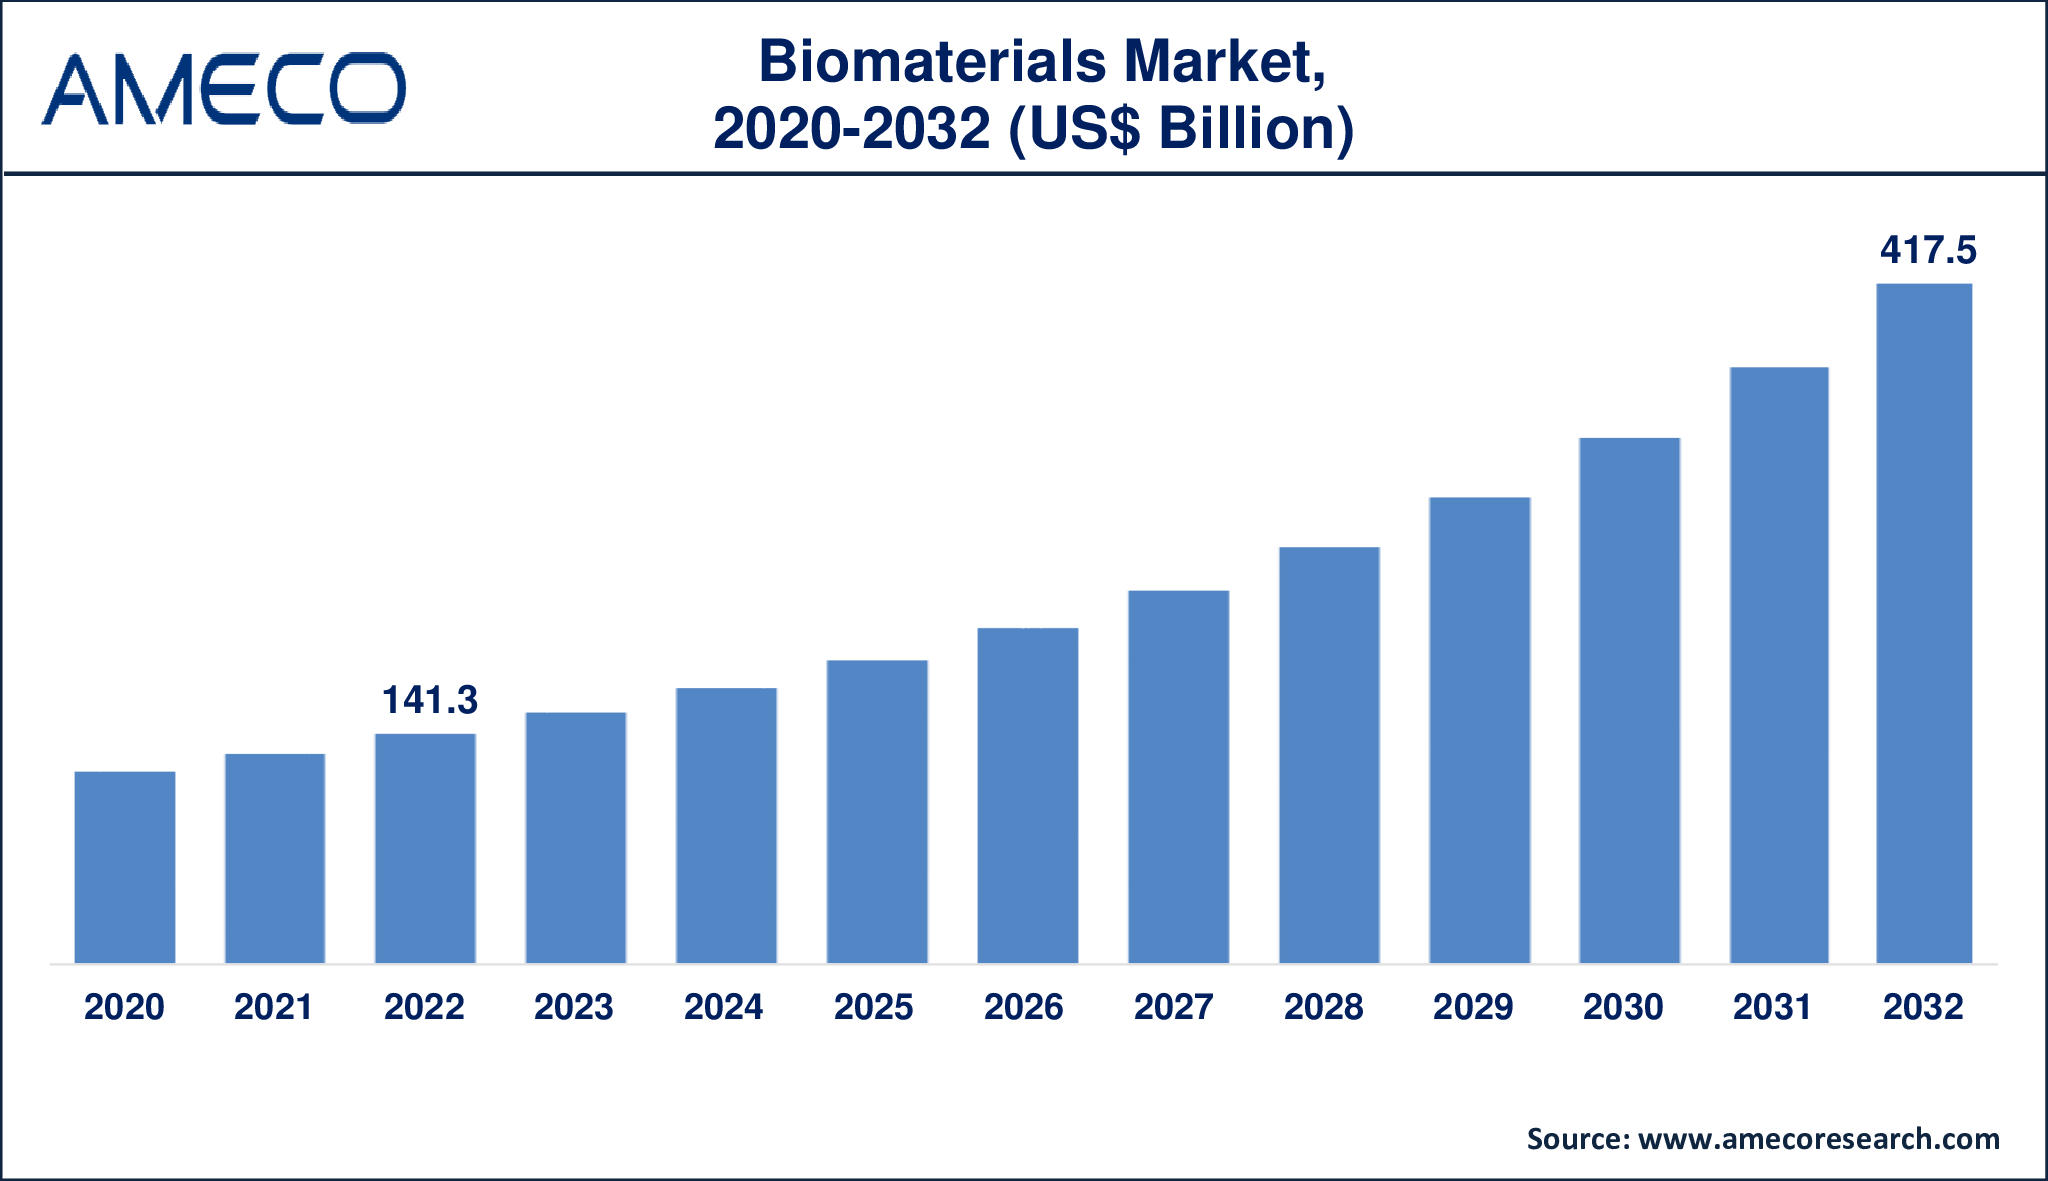 Biomaterials Market Dynamics